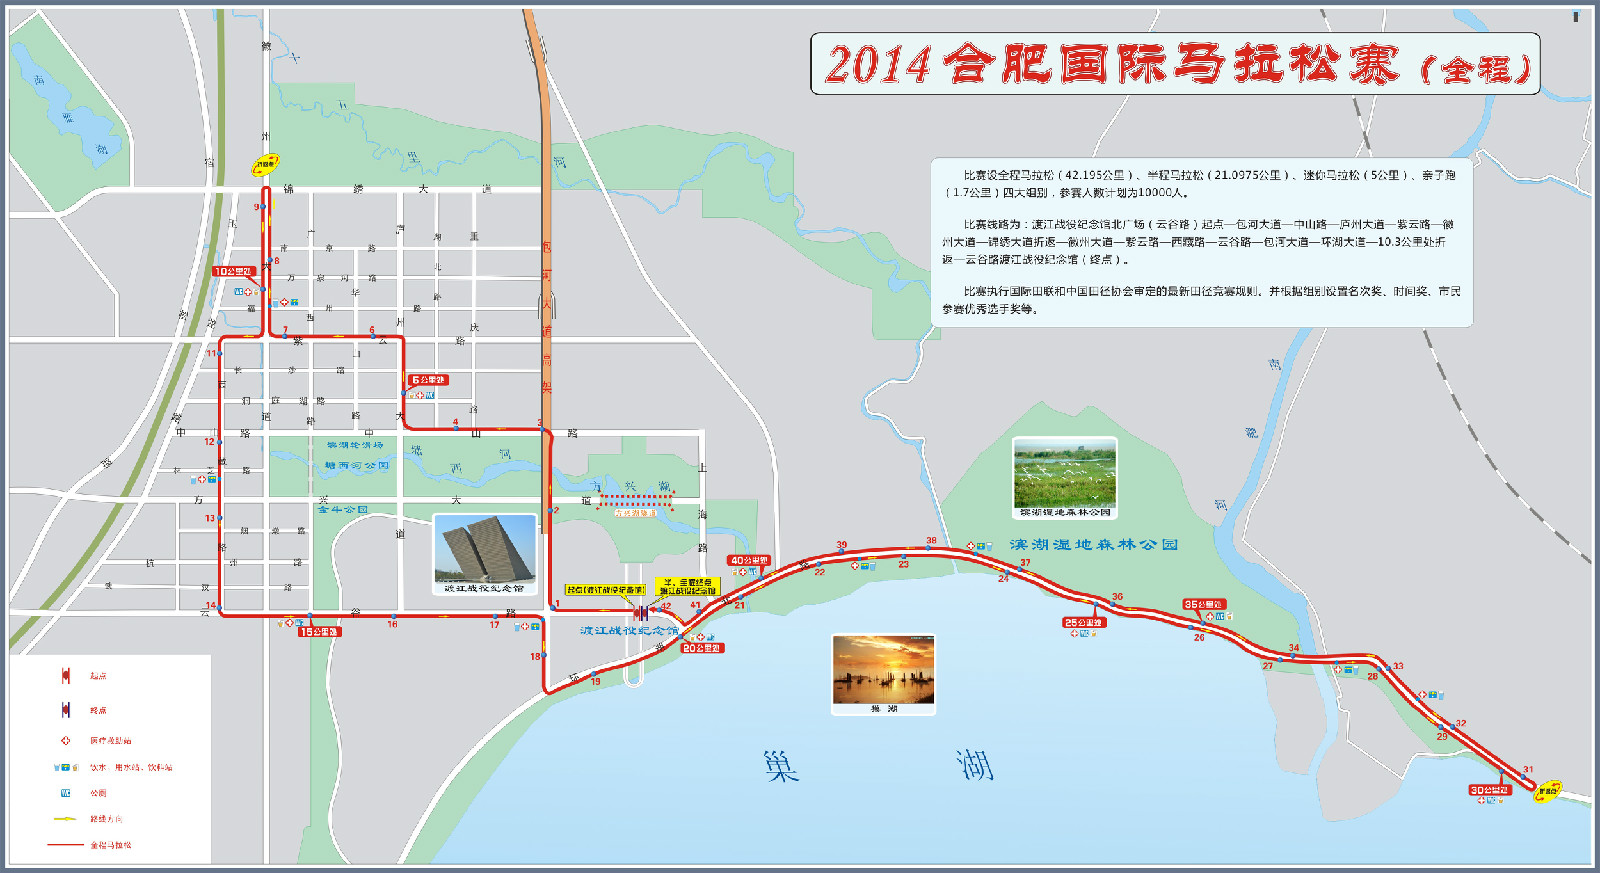 2014合肥國際馬拉松賽全程地圖